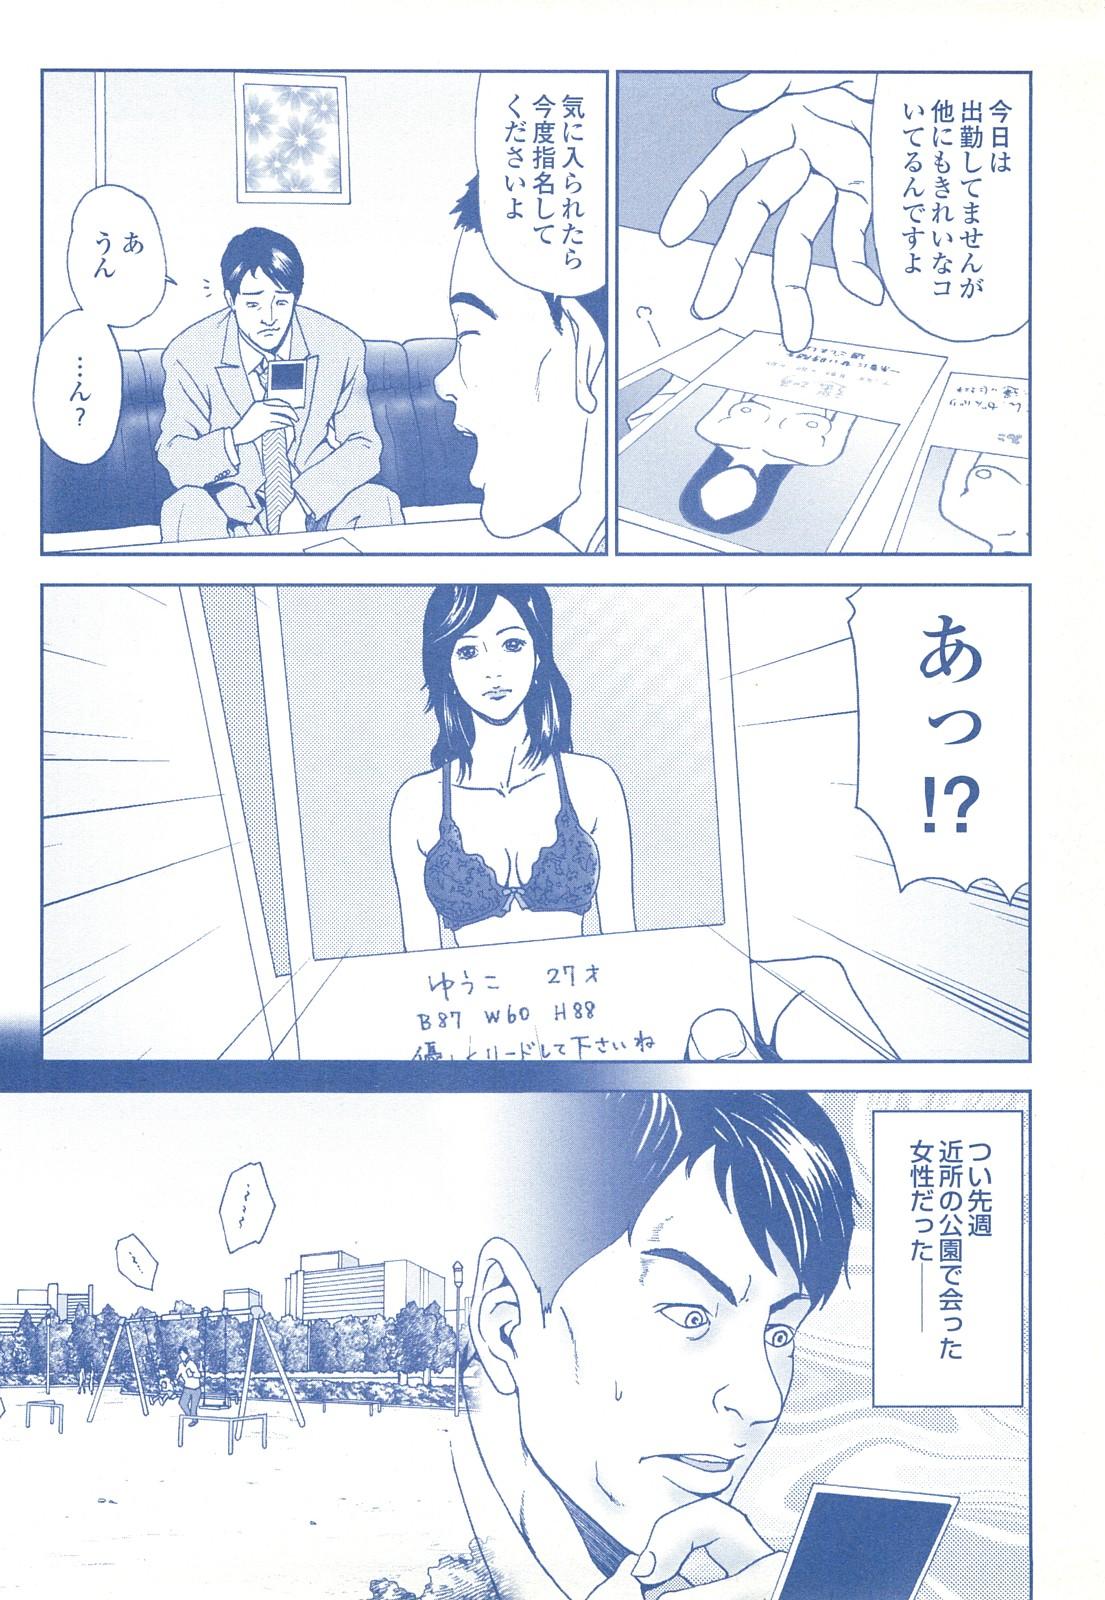 コミック裏モノJAPAN Vol.18 今井のりたつスペシャル号 195